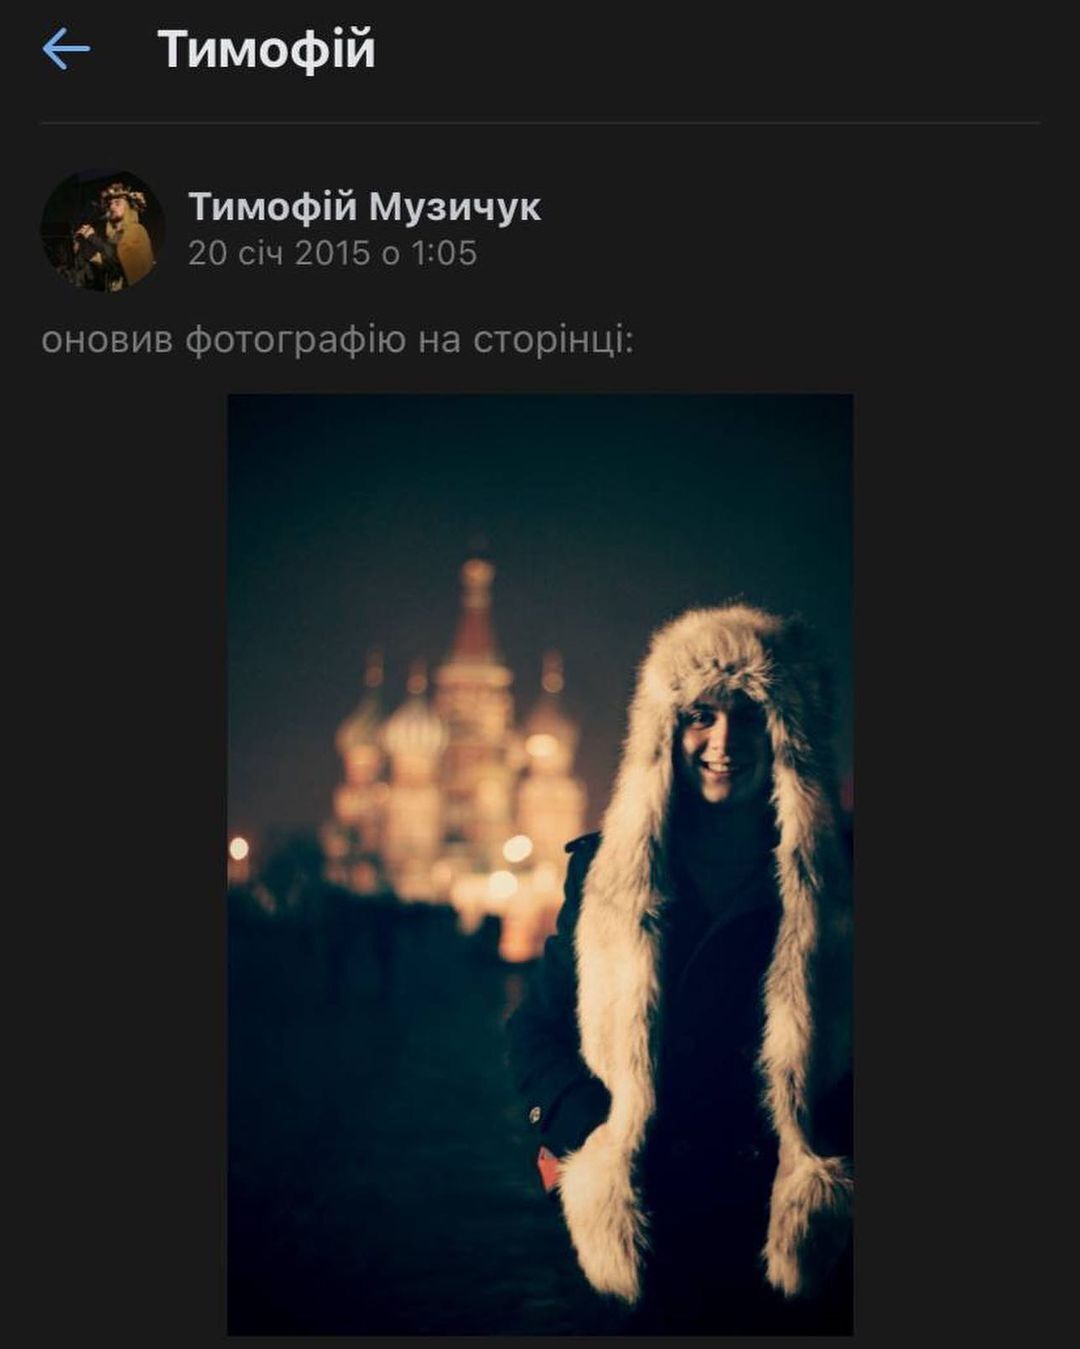 Музичук ділився фото на фоні Собору Василя Блаженного в Москві